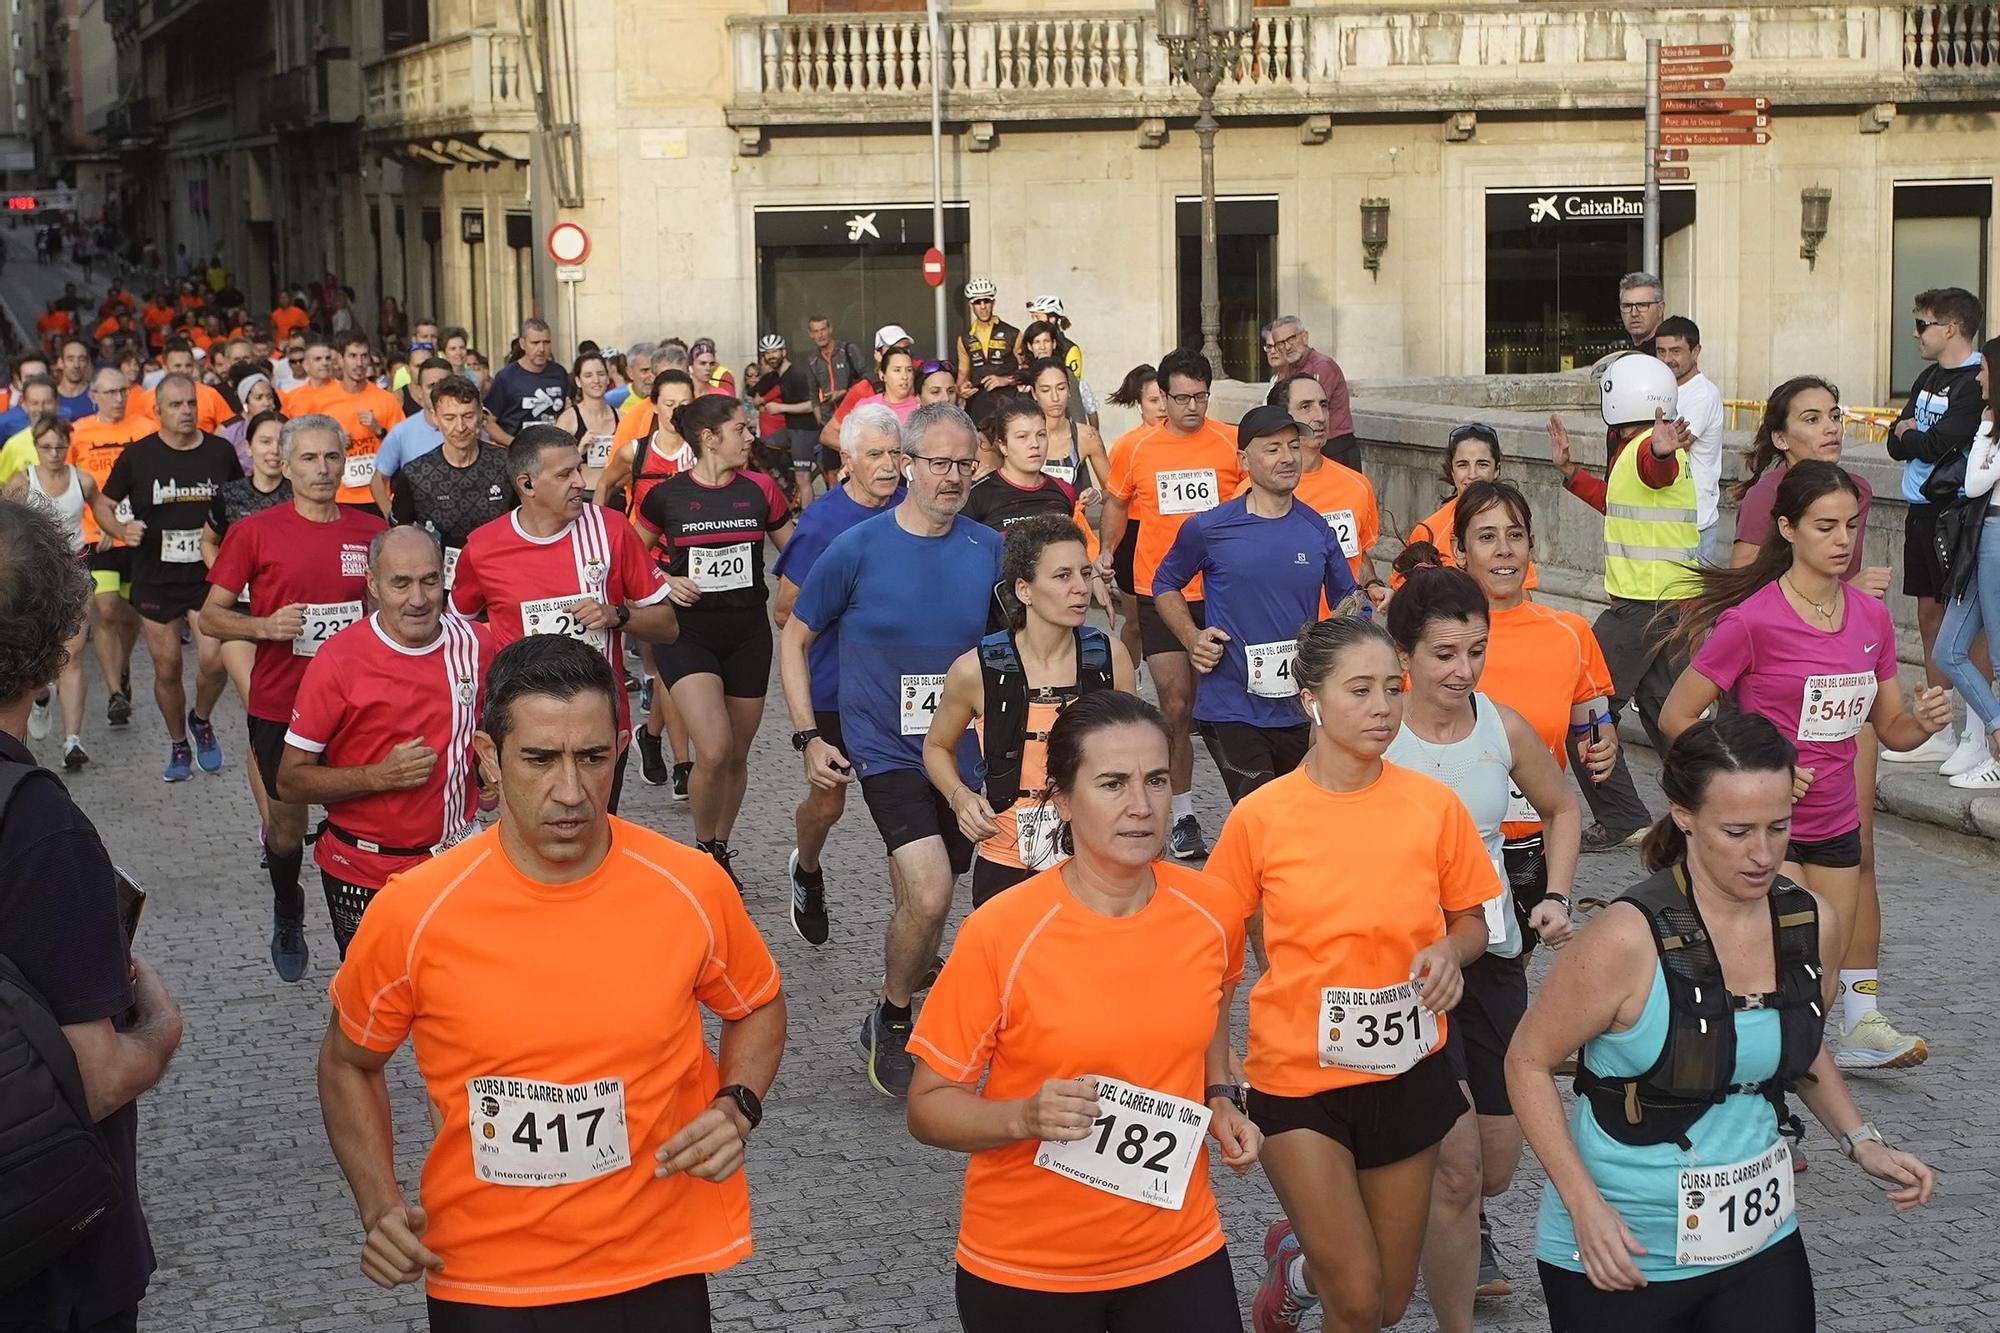 La 44a edició de la Cursa del Carrer Nou de Girona, en imatges